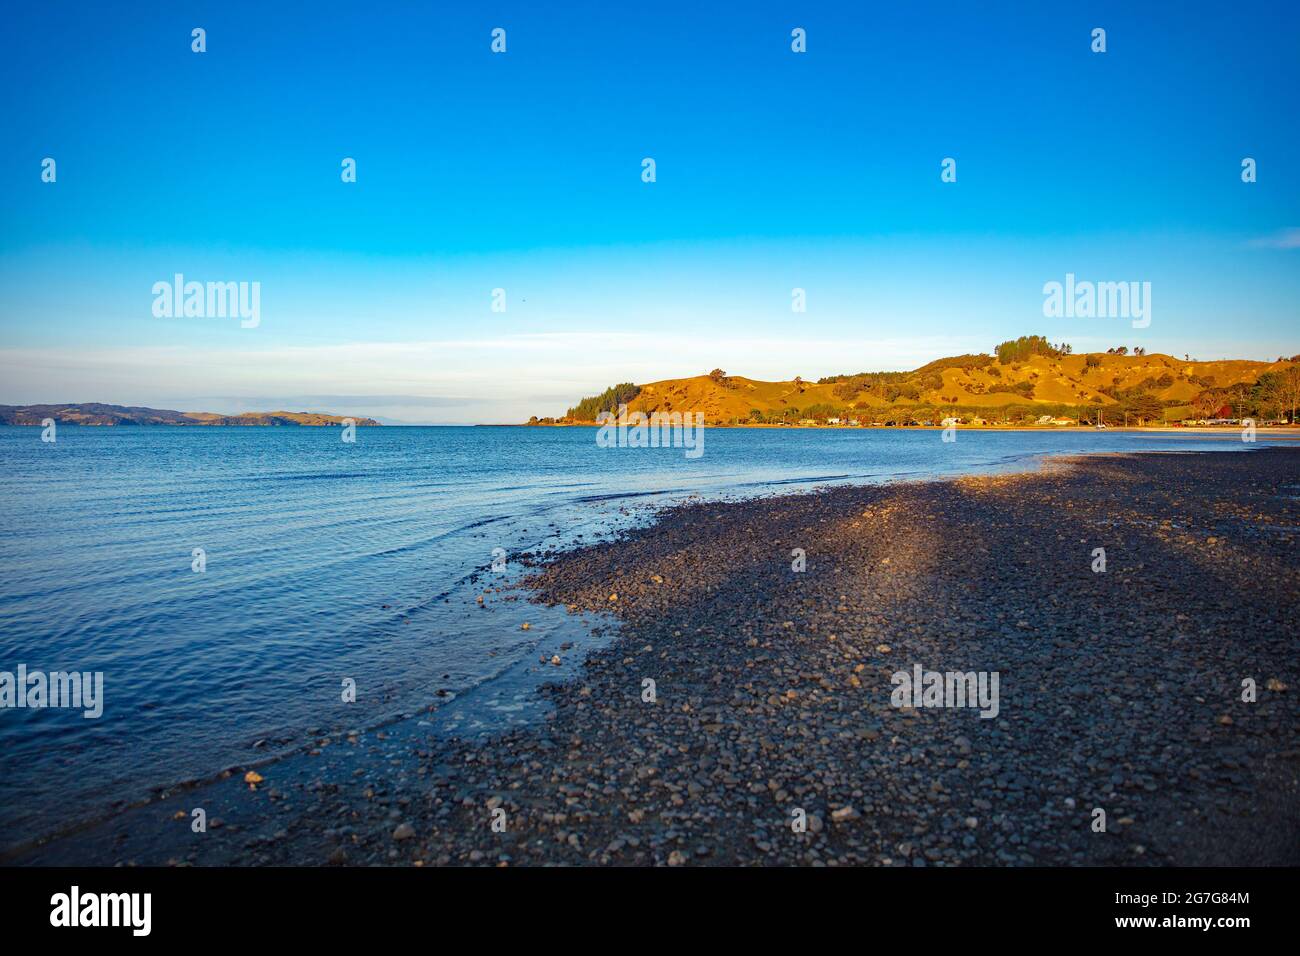 Kawakawa Bay Beach, New Zealand in summer. Stock Photo